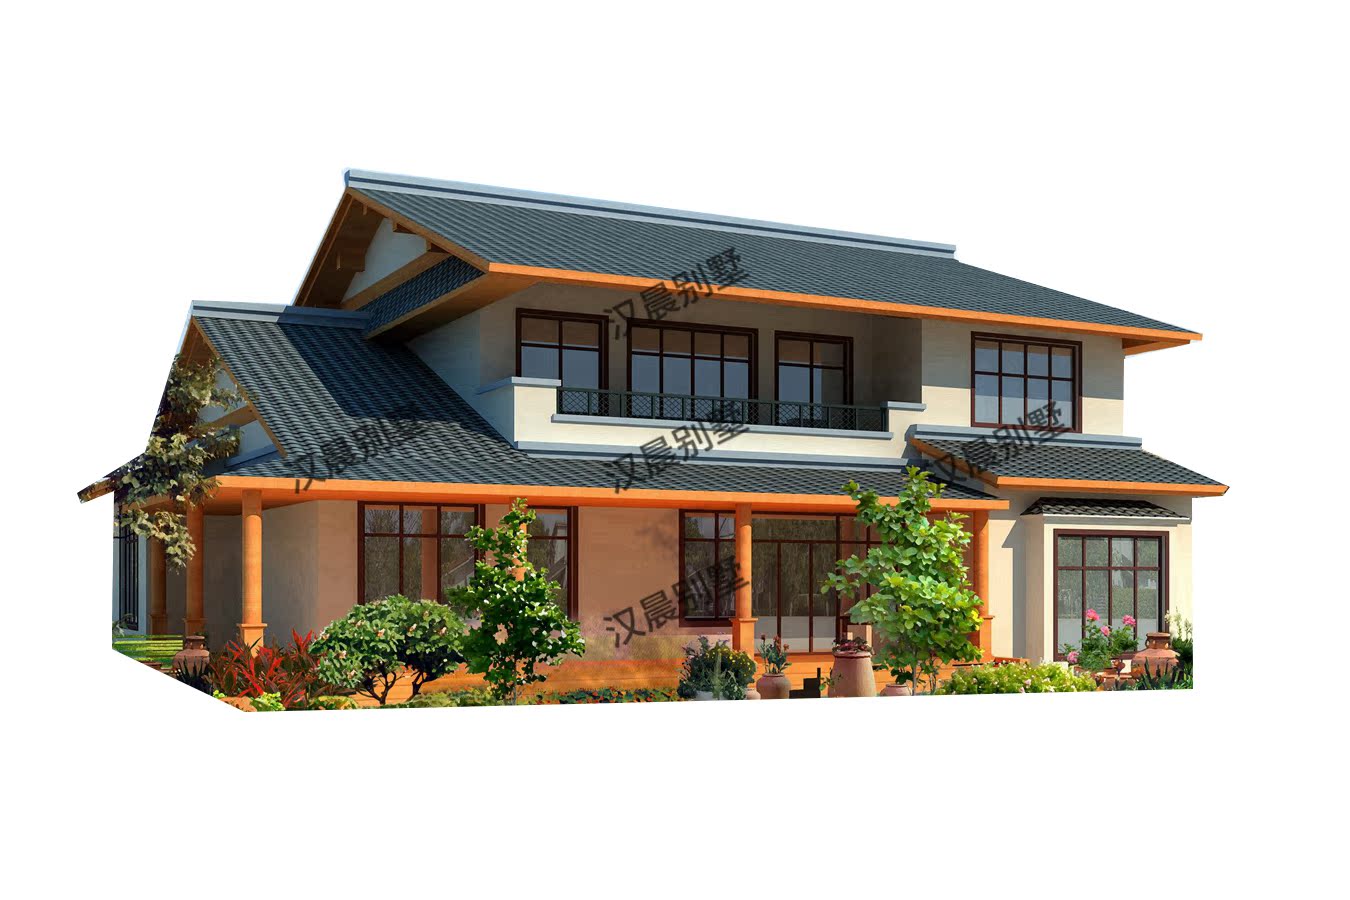 16.6x14.2米日式风格两层别墅设计图纸新款网红二层自建房效果图-图3